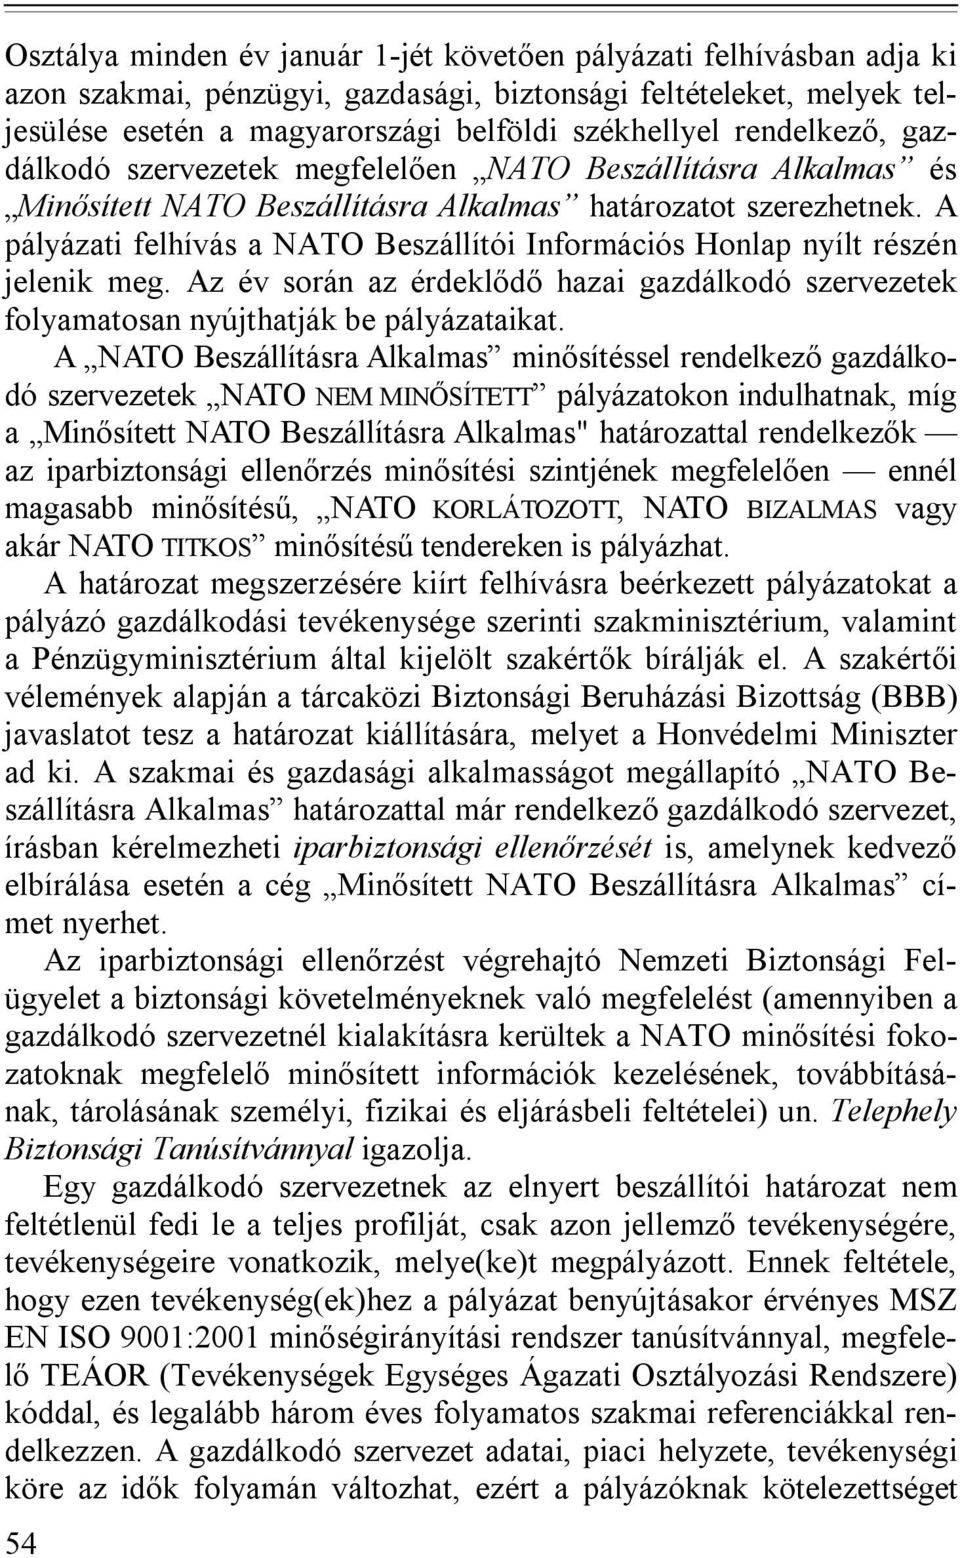 A pályázati felhívás a NATO Beszállítói Információs Honlap nyílt részén jelenik meg. Az év során az érdeklődő hazai gazdálkodó szervezetek folyamatosan nyújthatják be pályázataikat.